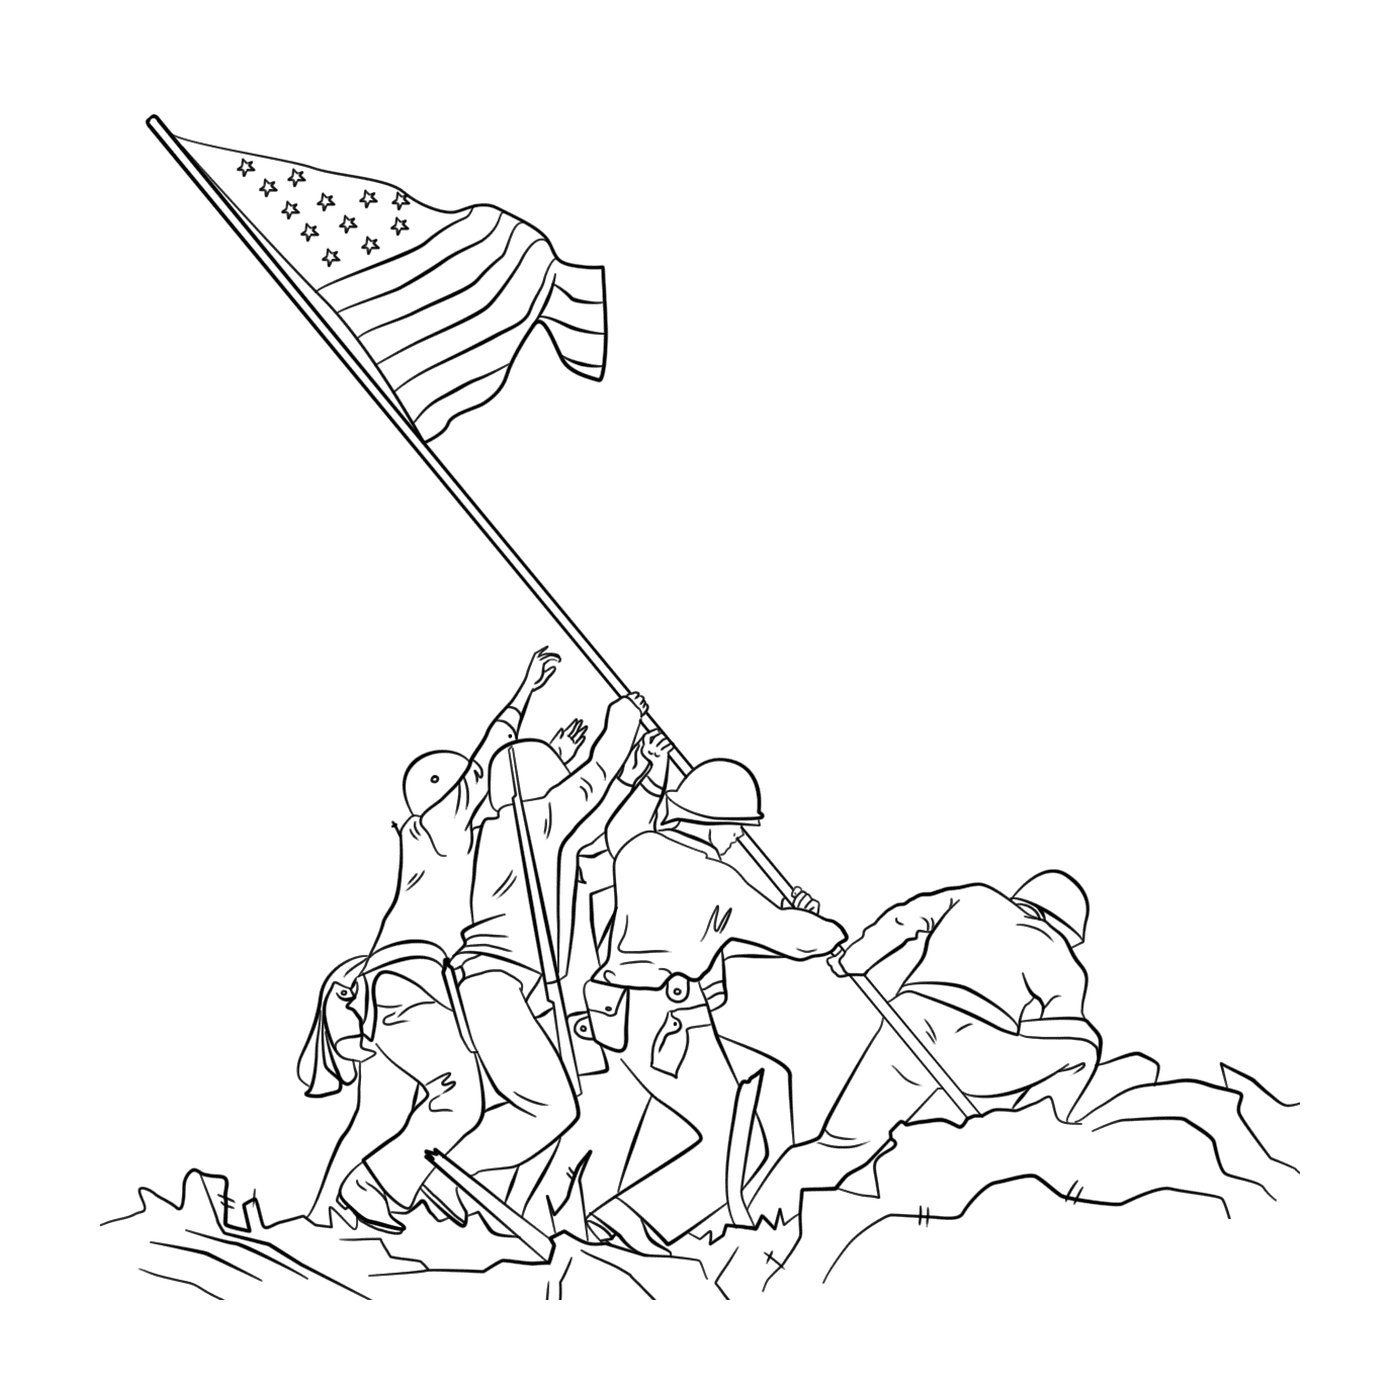  Gruppo di persone che brandisce una bandiera quando alza la bandiera su Iwo Jima 